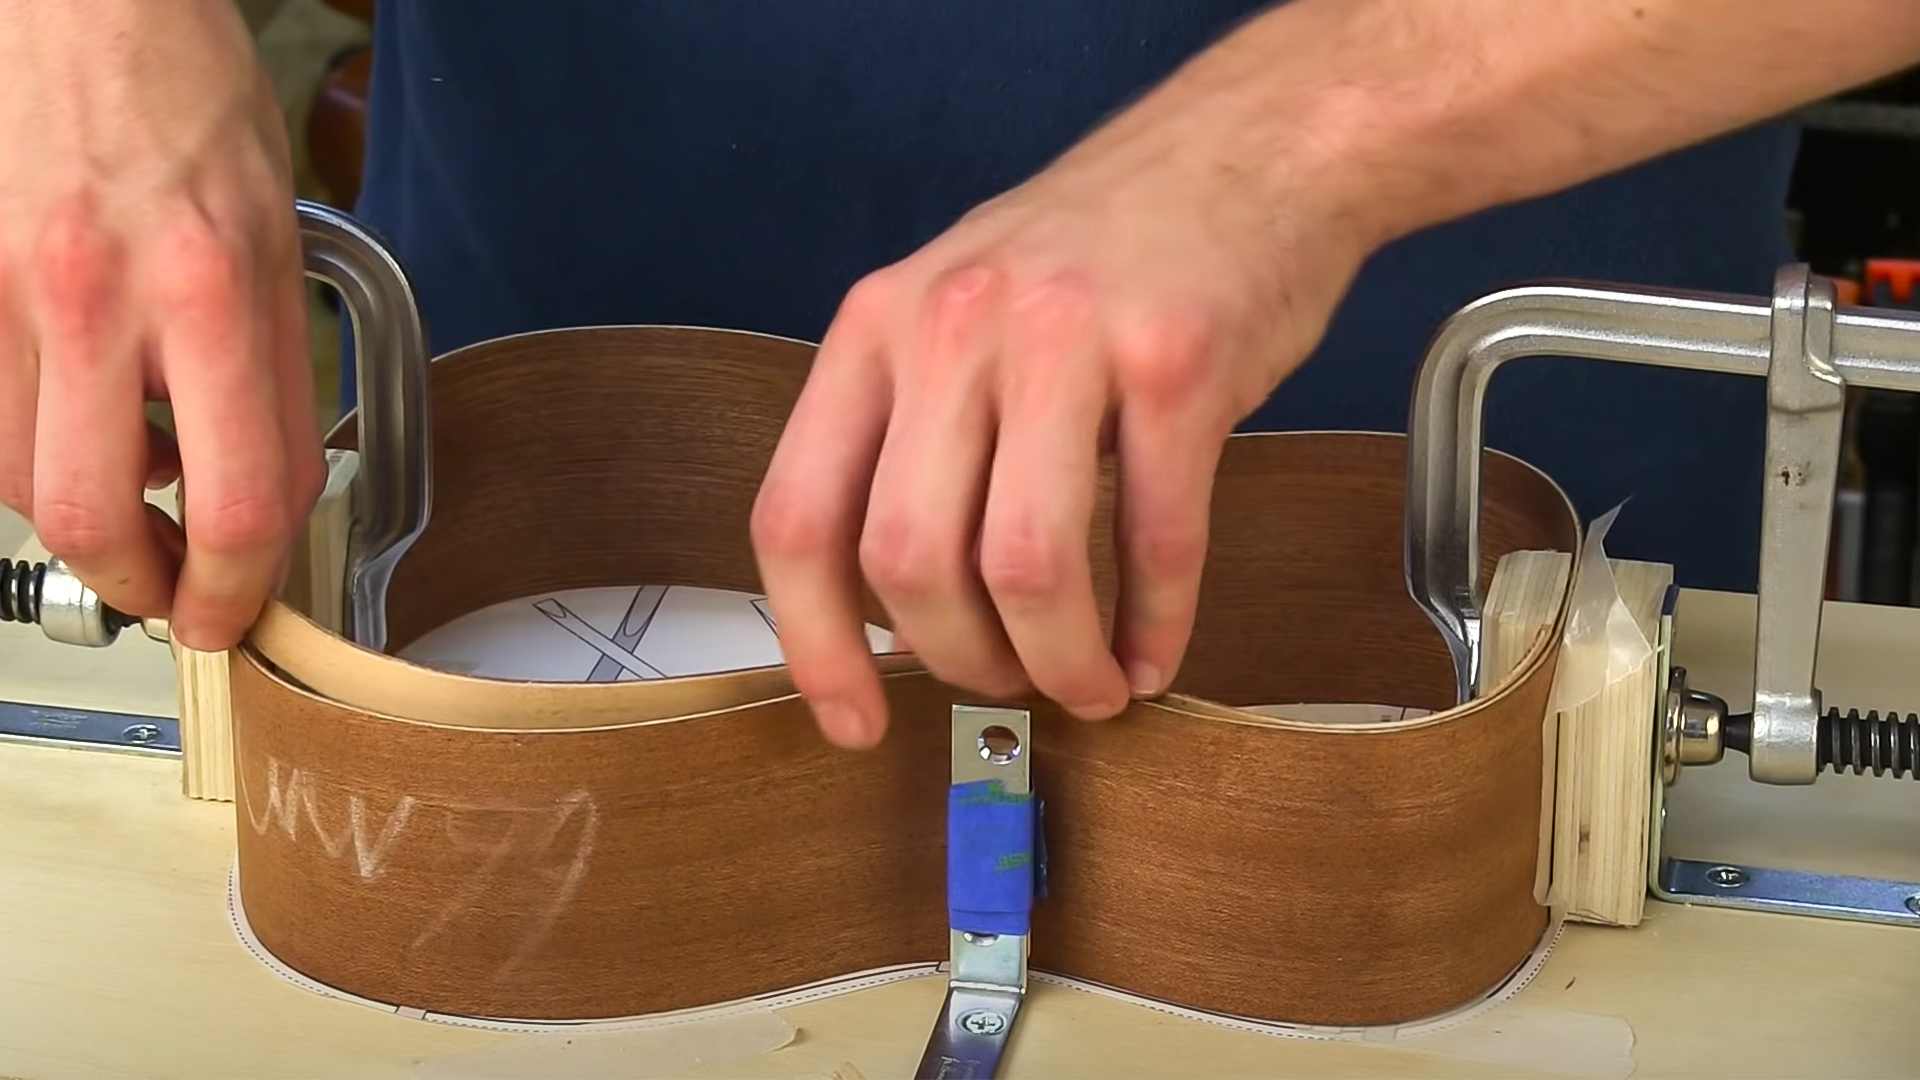 Hands fitting ukulele sides into body mold